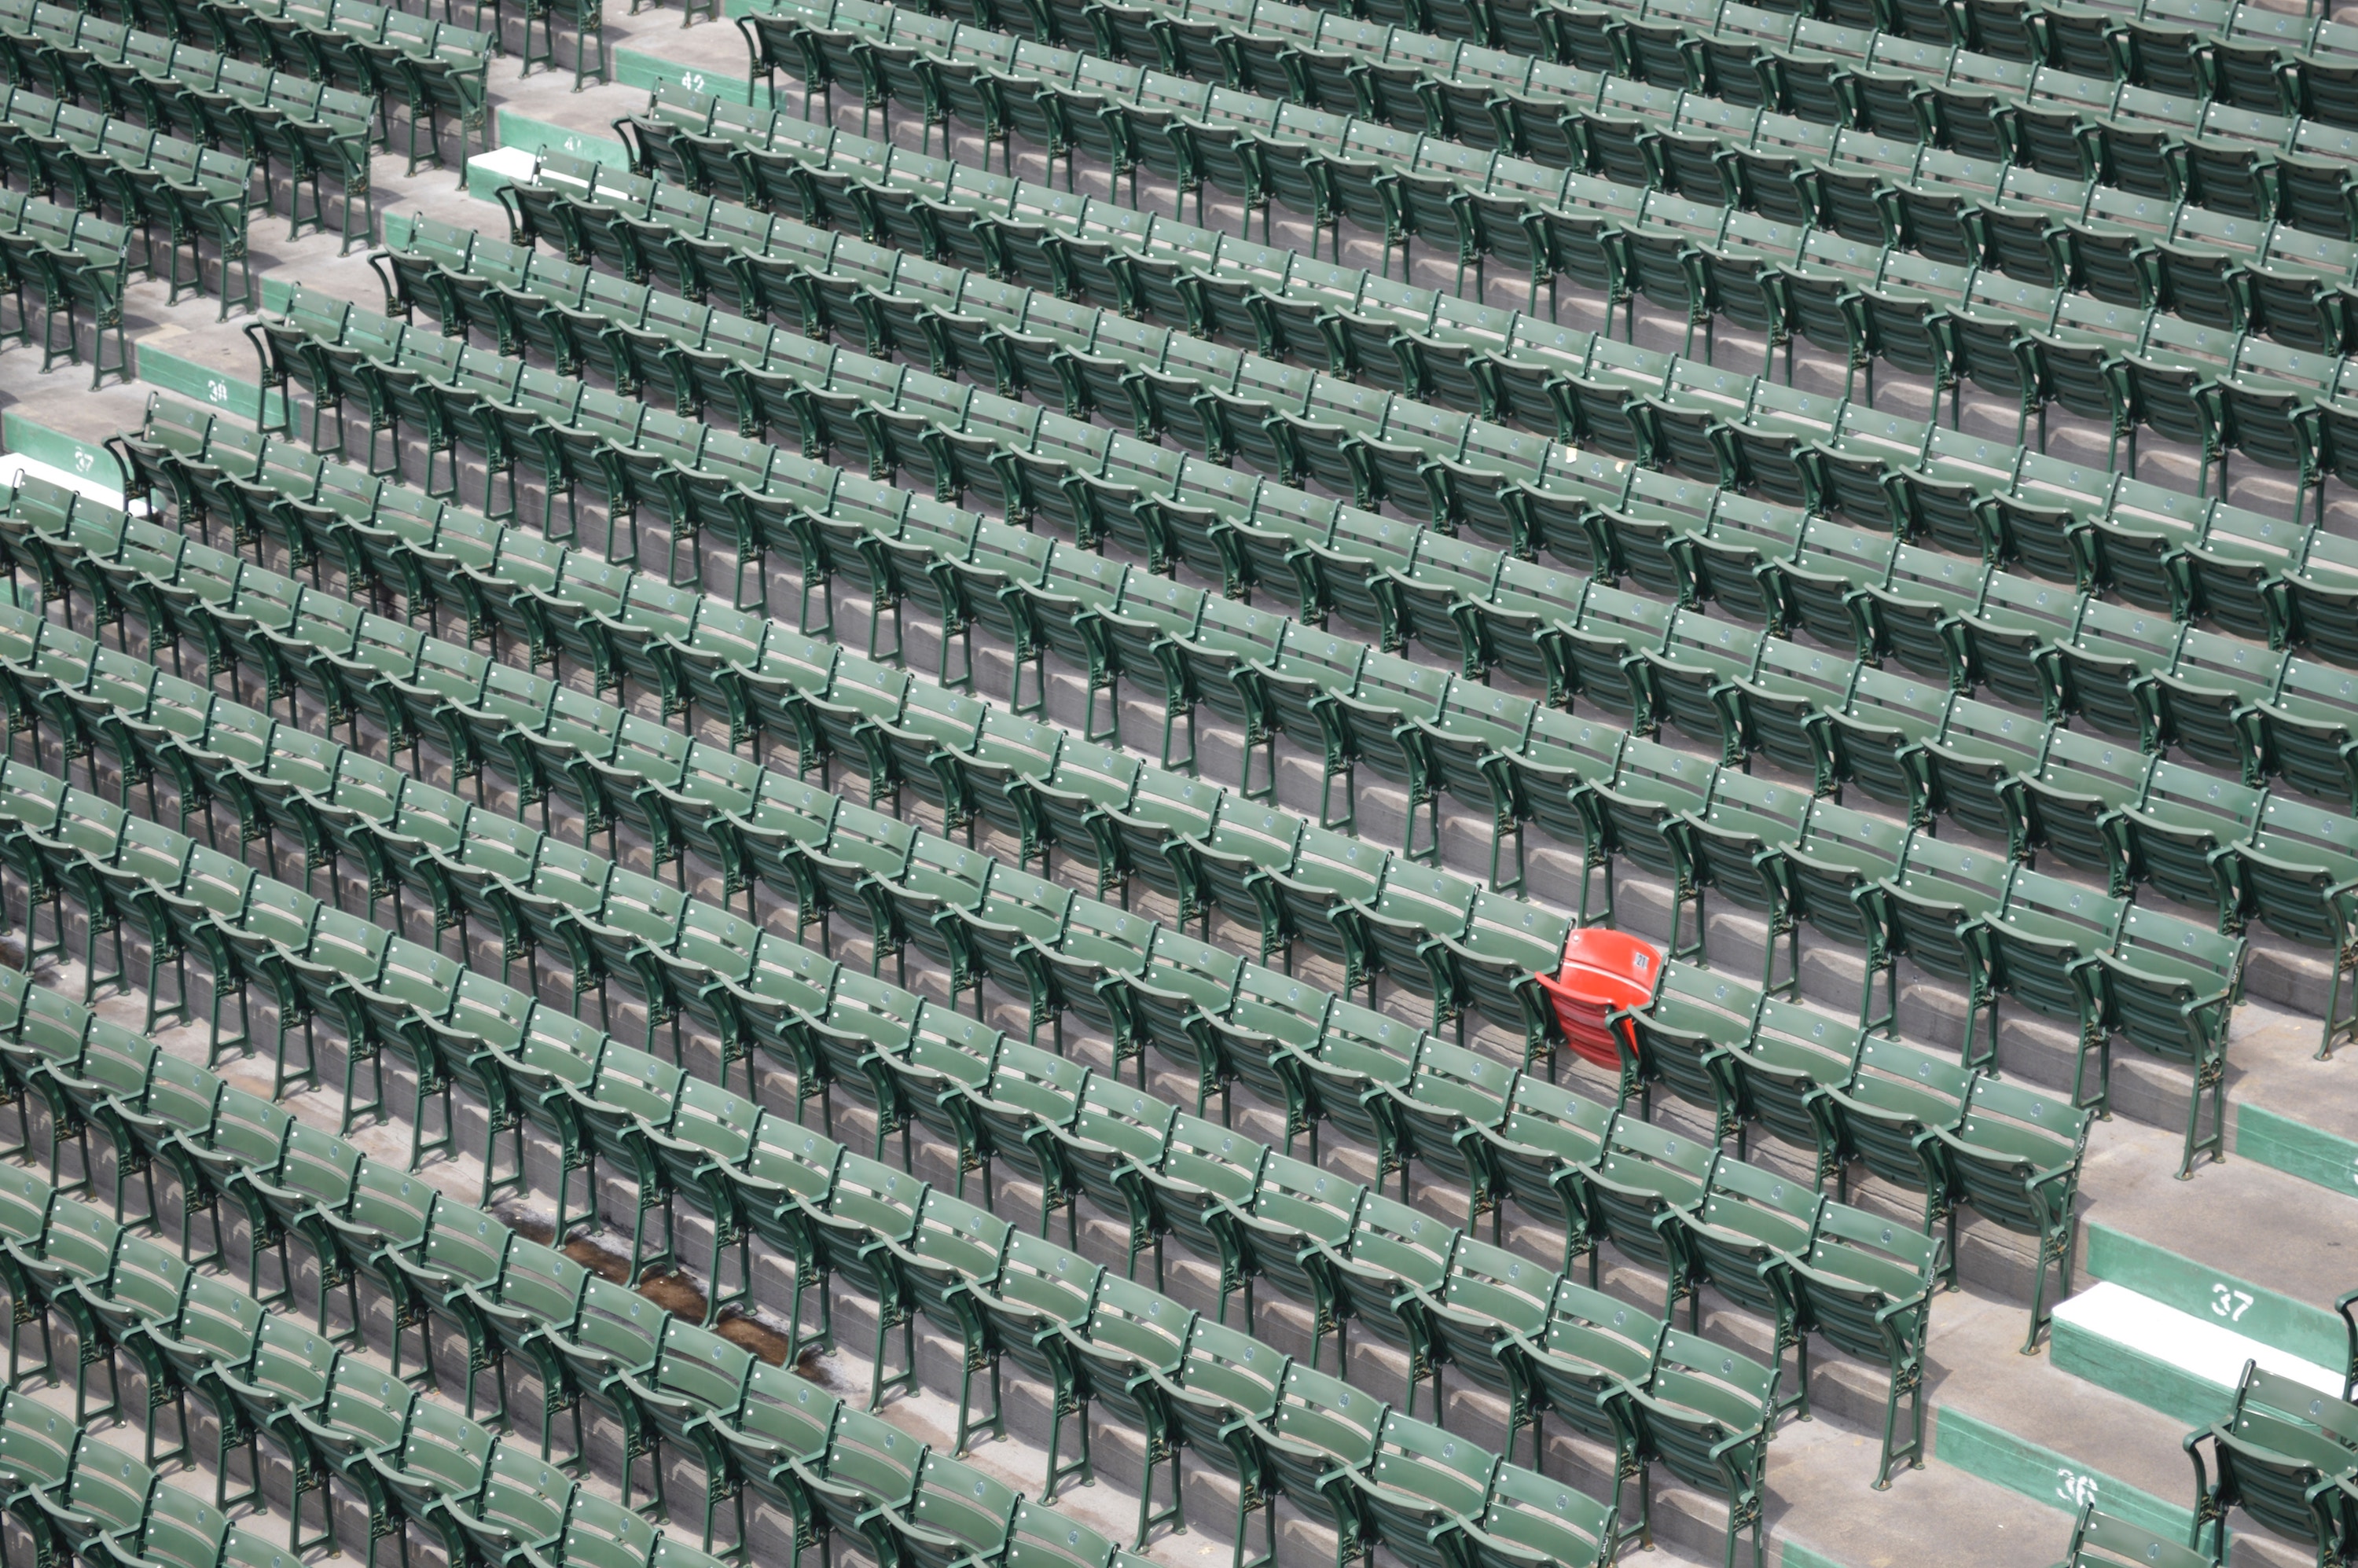 Empty seats in baseball stadium